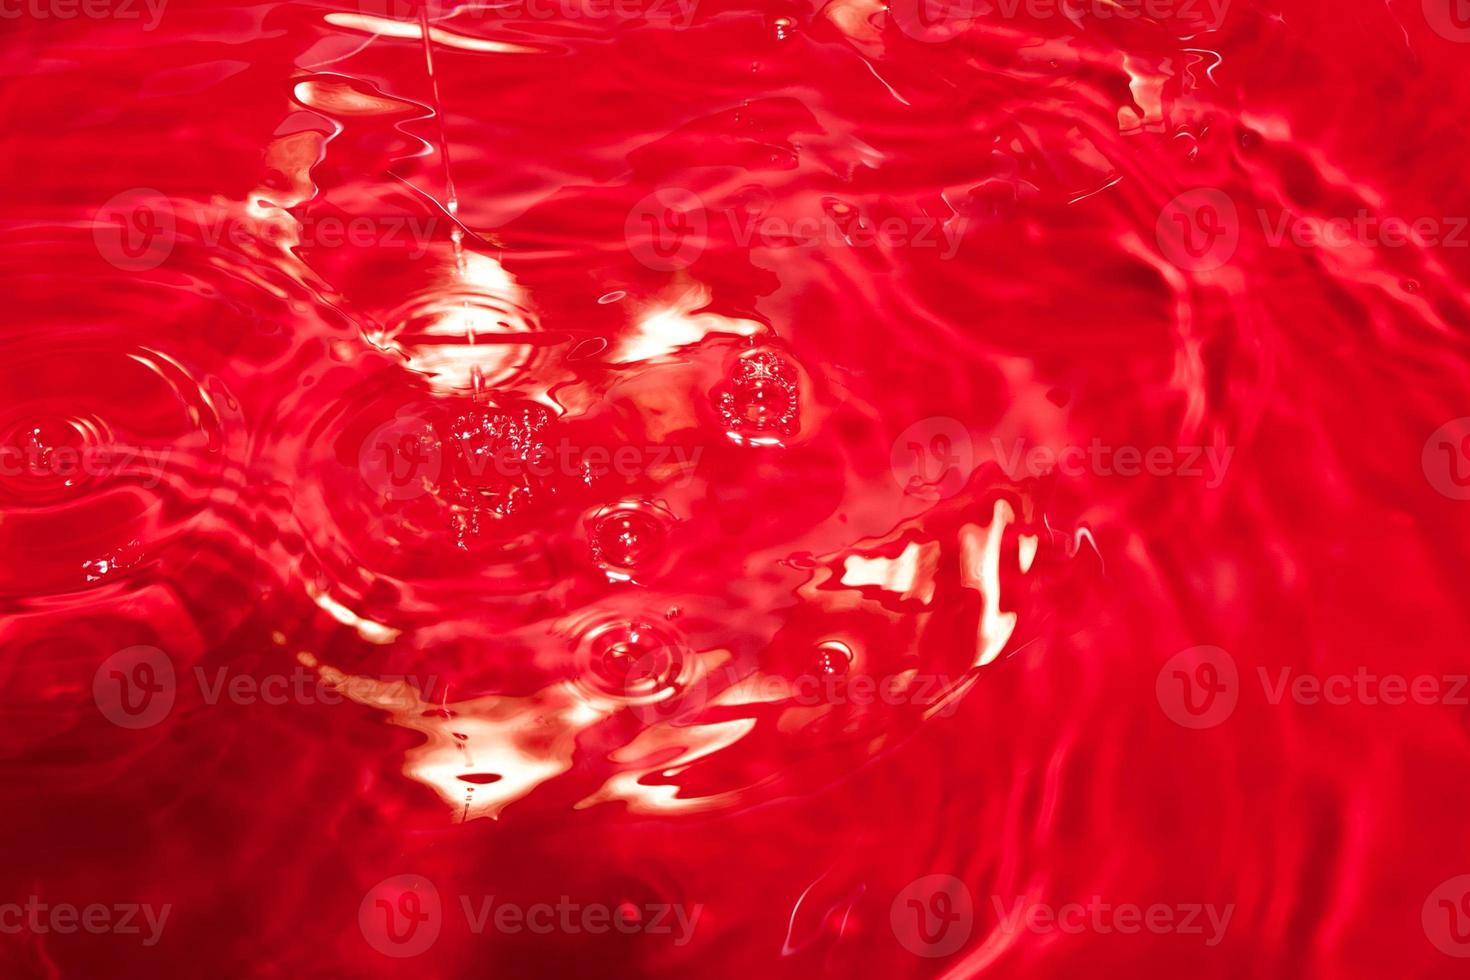 vermelho abstrato backgroud caótico com padrão sem emenda. textura de superfície líquida vermelha. foto